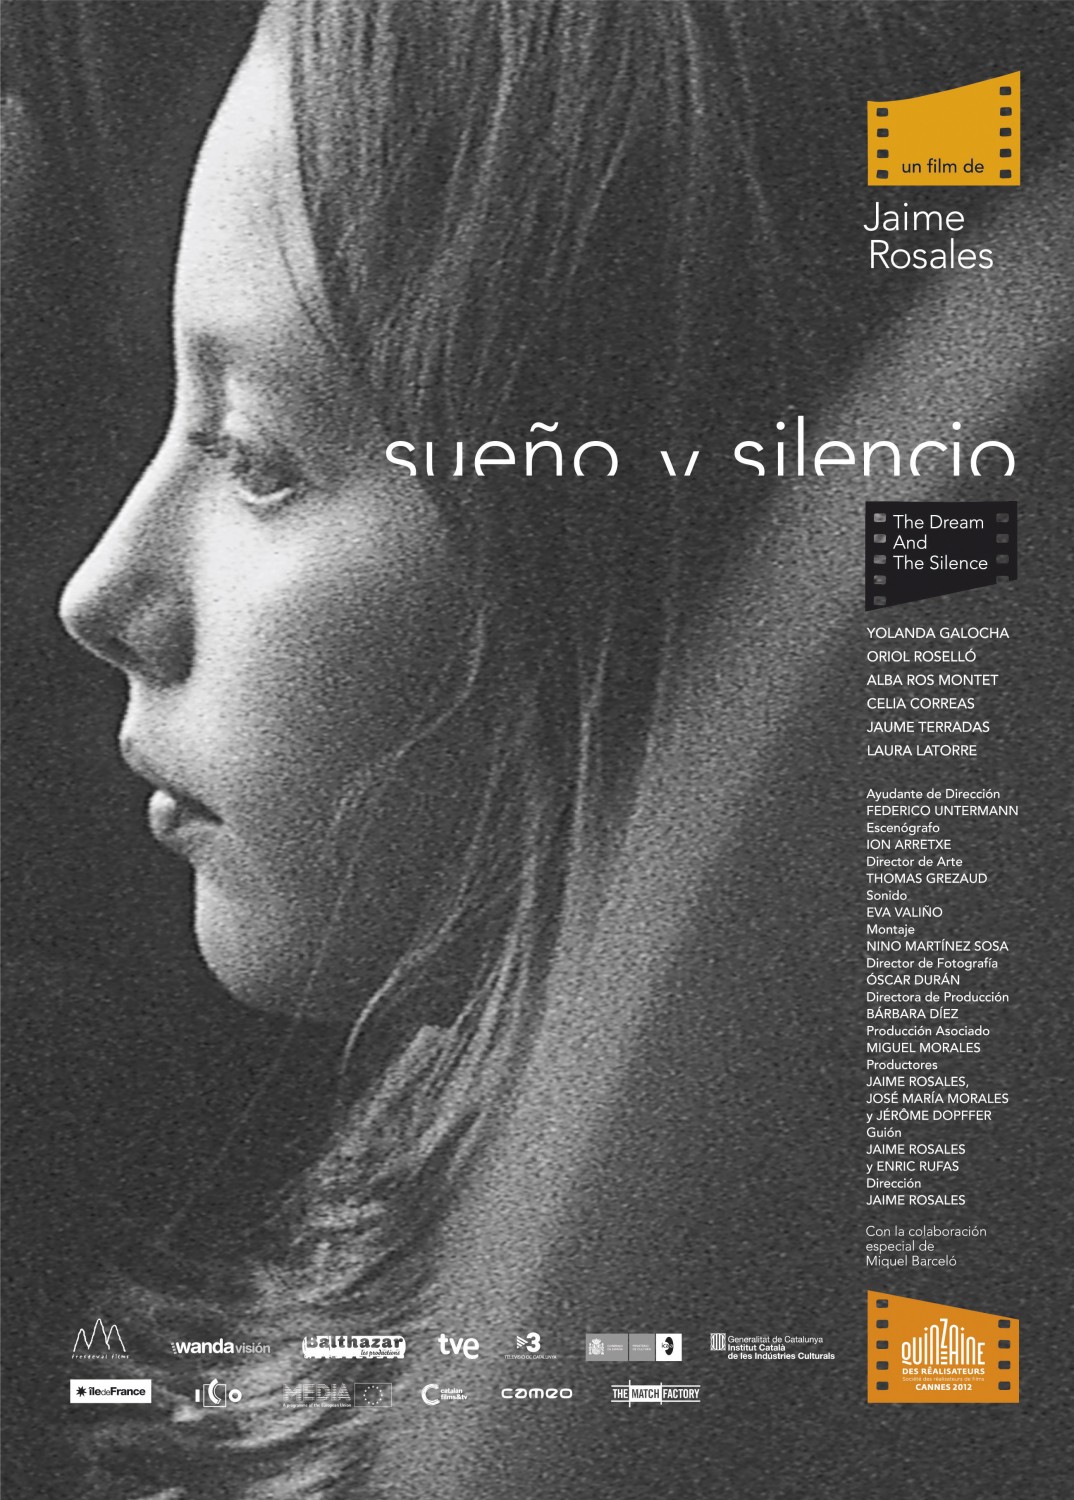 Extra Large Movie Poster Image for Sueño y silencio 